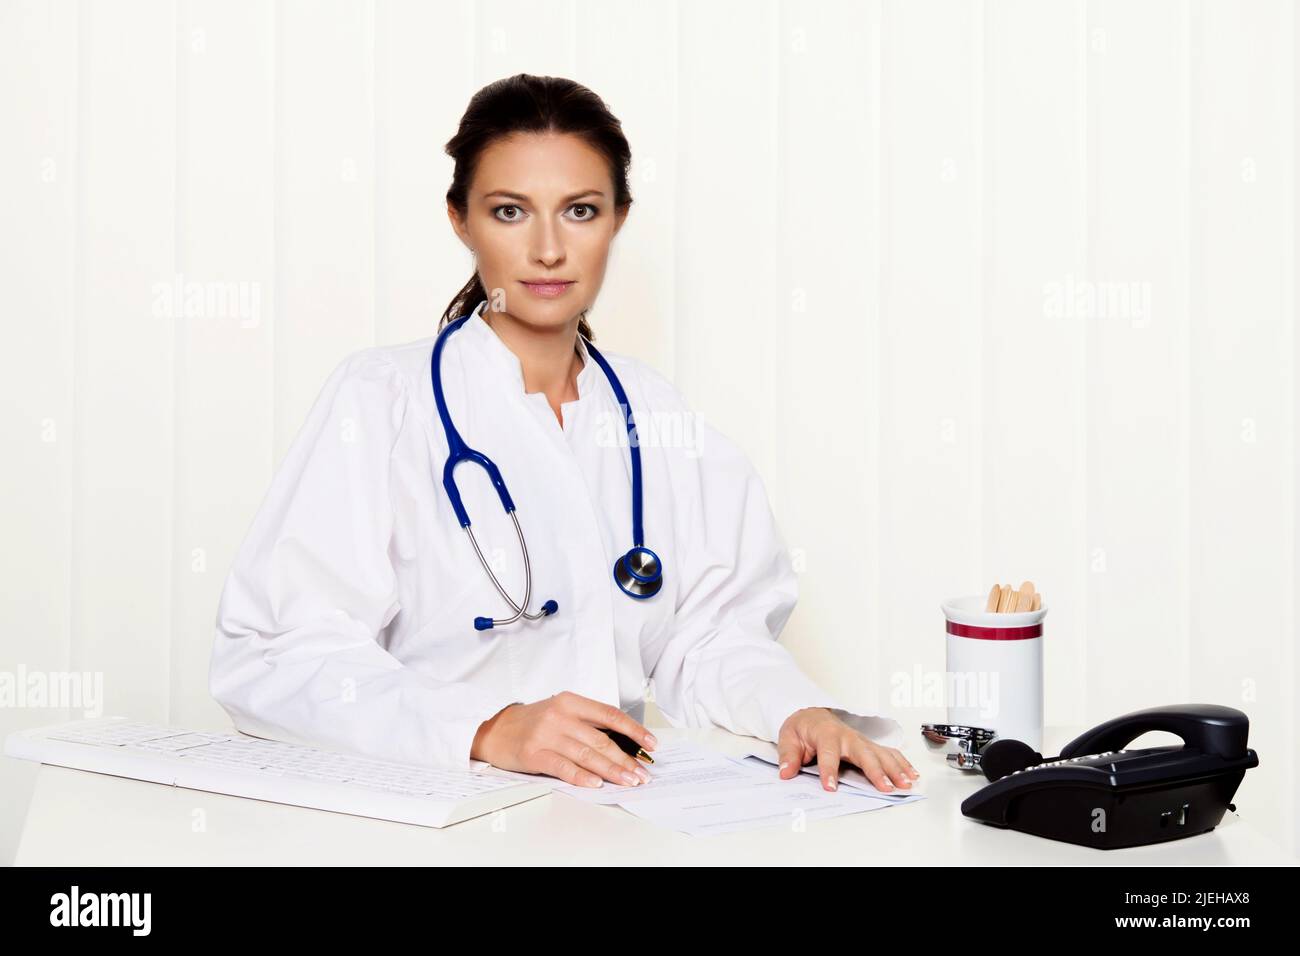 Junge Ärztin in ihrer Arztpraxis am Schreibtisch Stock Photo